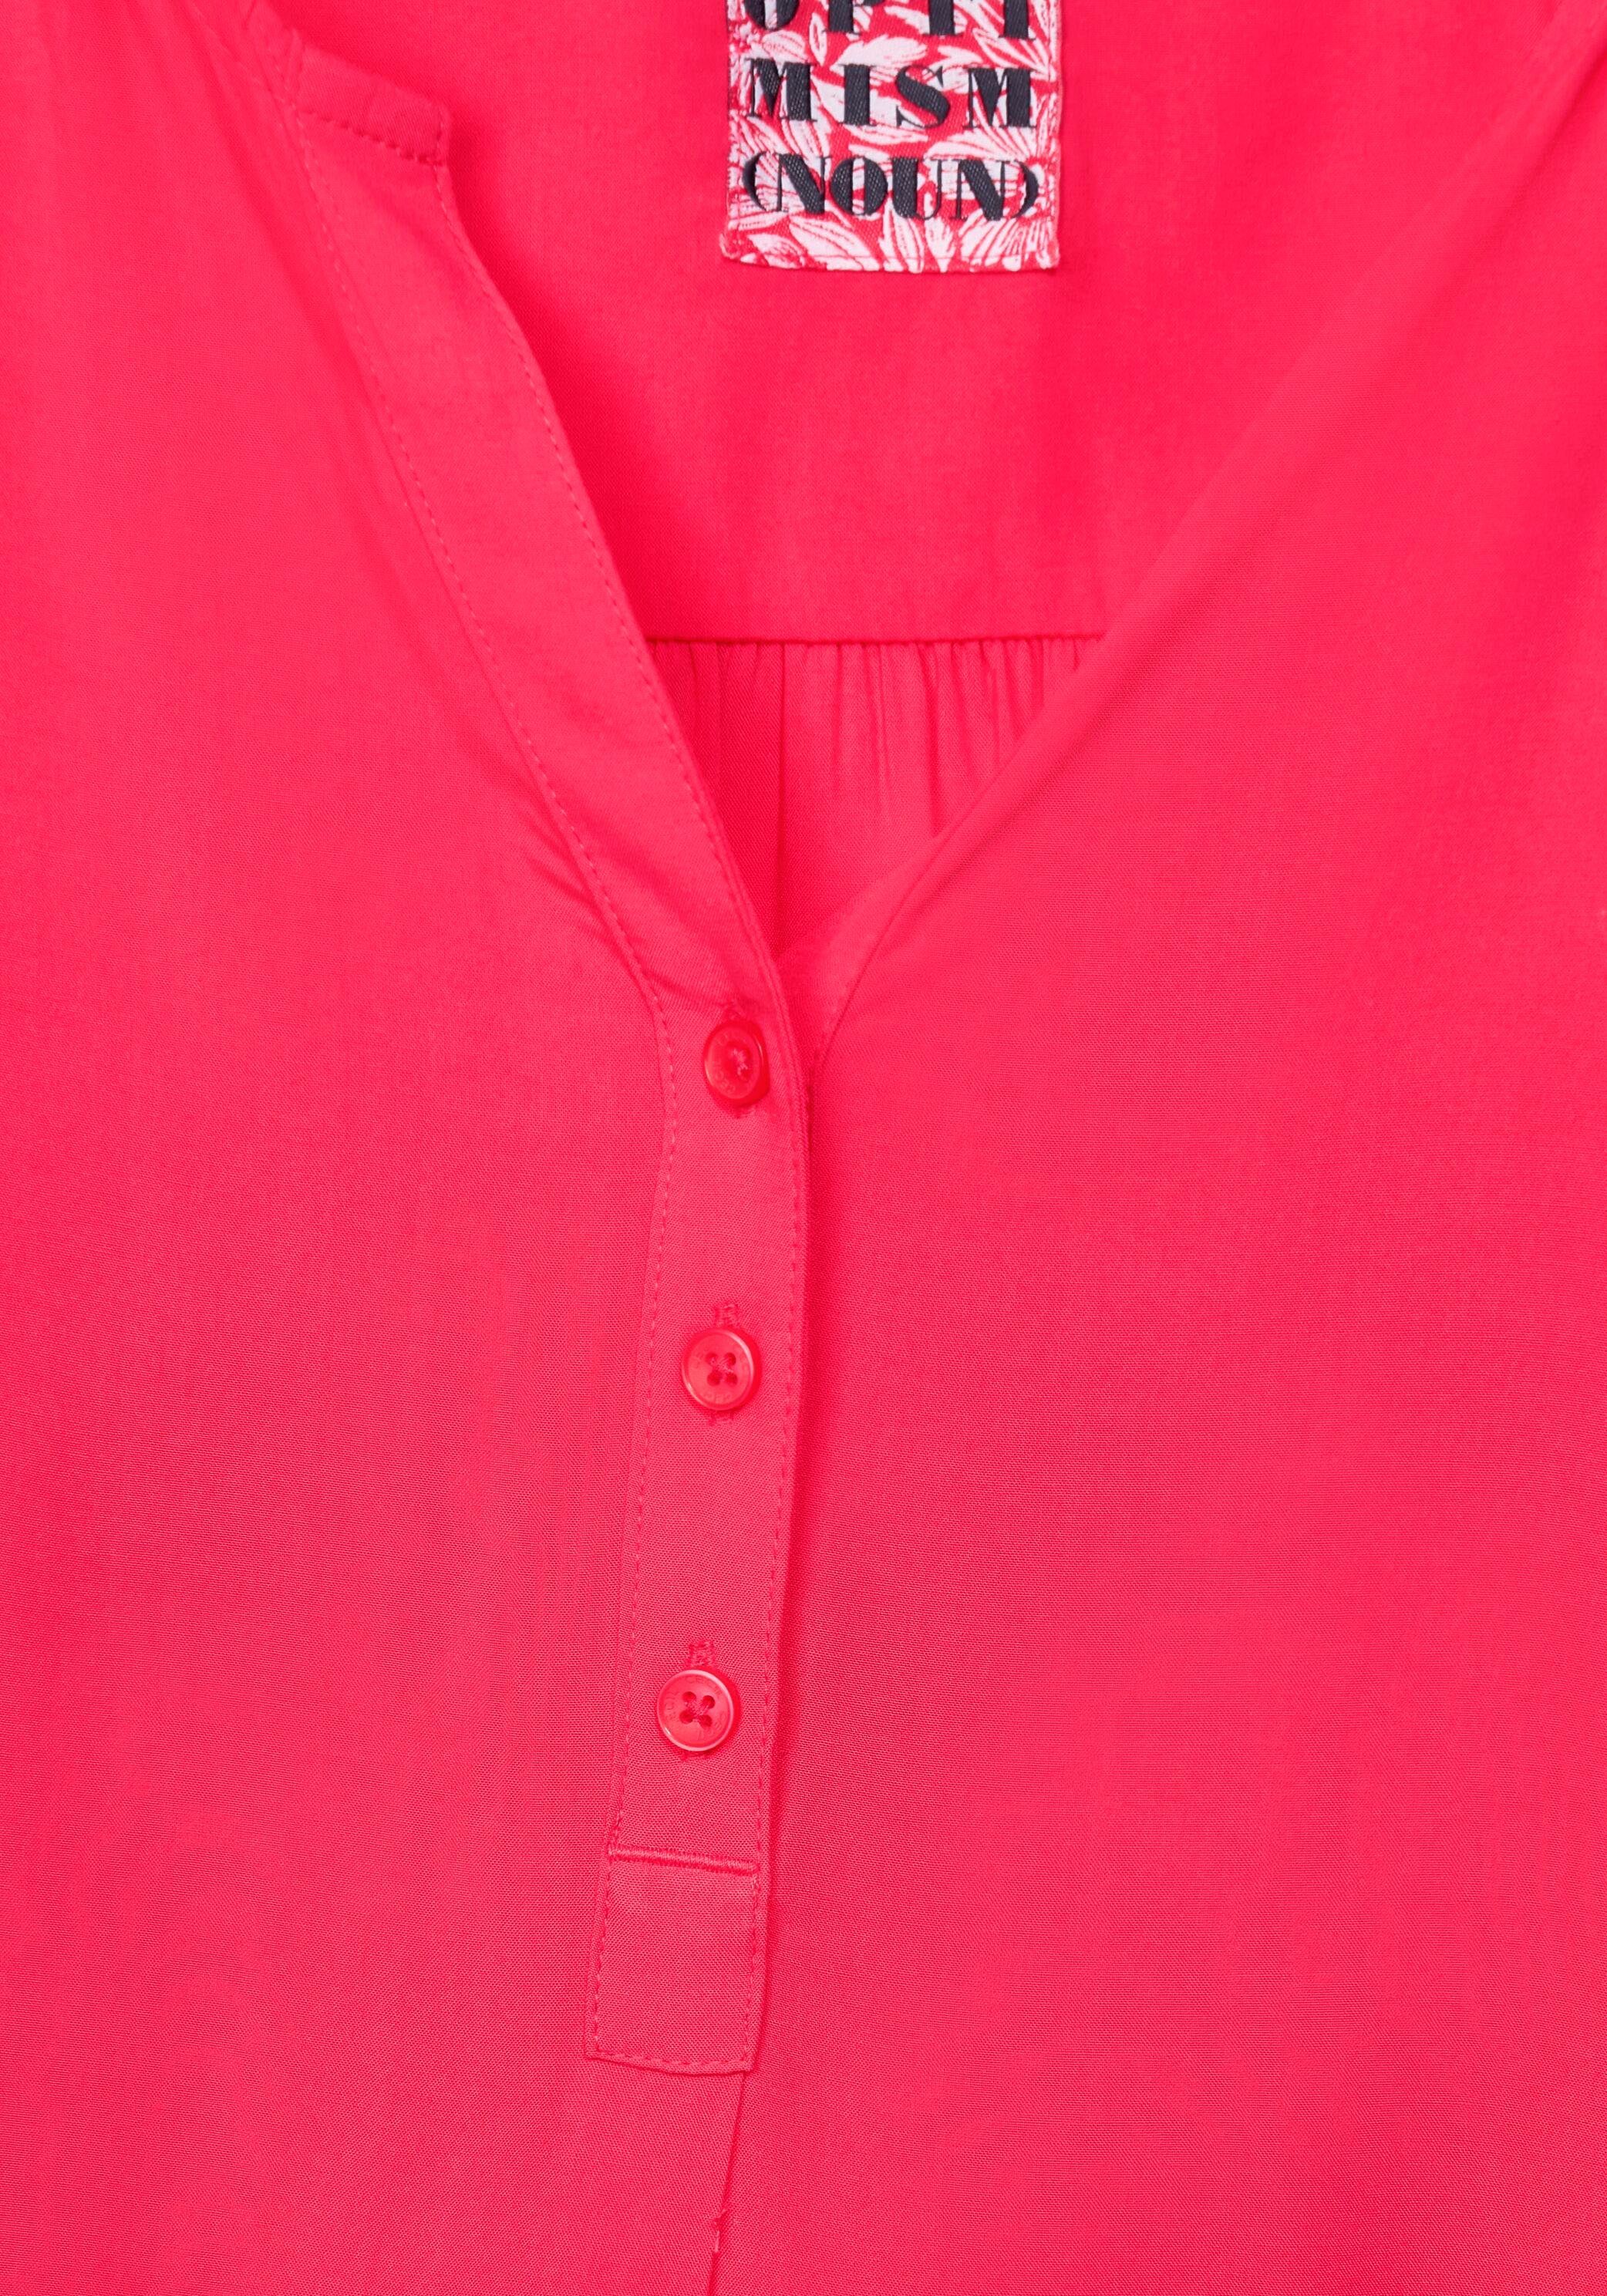 Cecil Shirtbluse pink mit Serafinoausschnitt